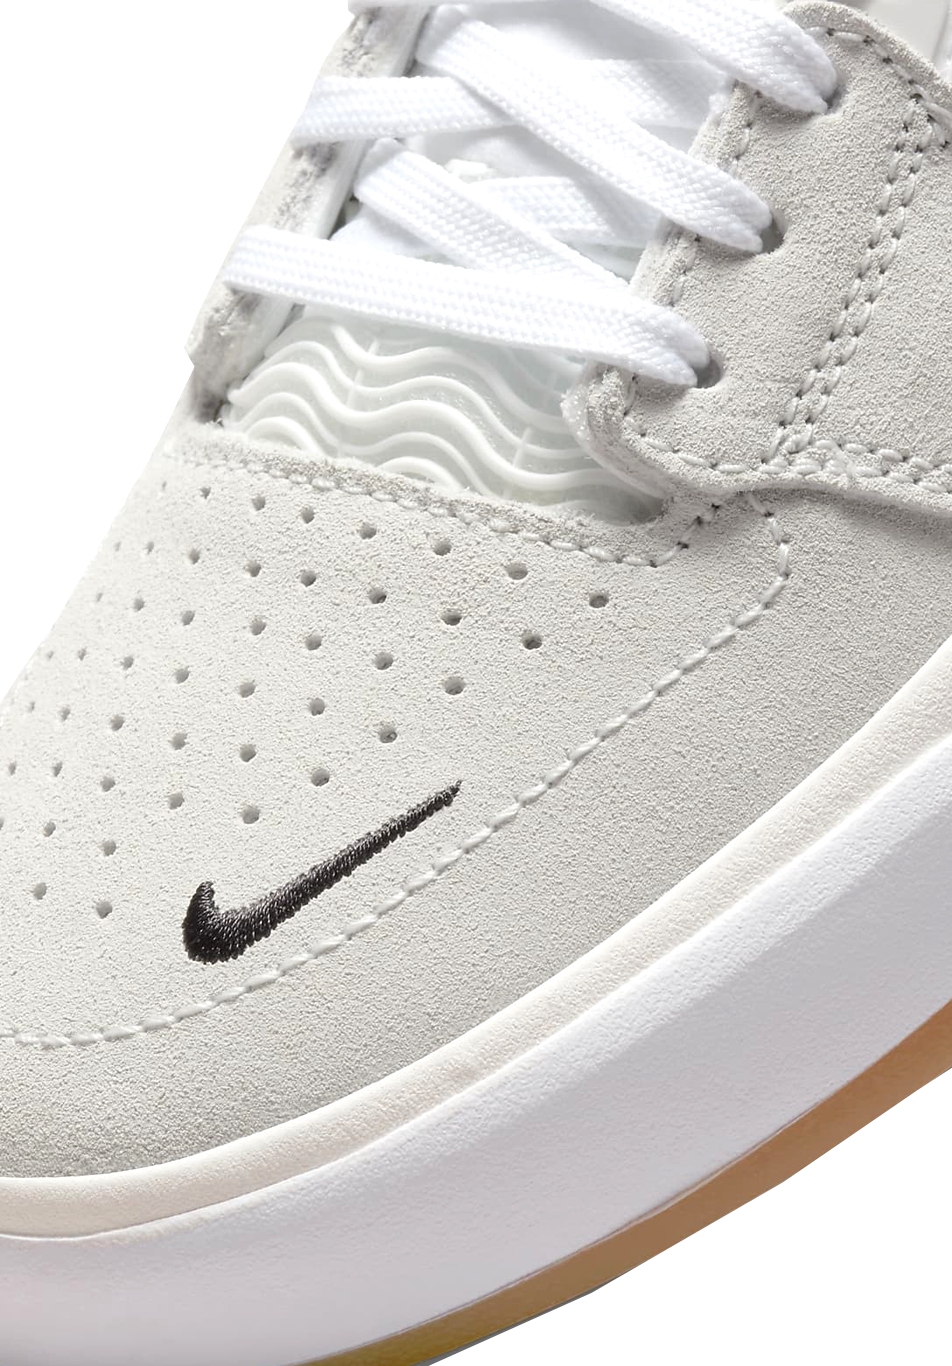 Chaussure Nike SB Ishod White Gum EN LIGNE UNIQUEMENT